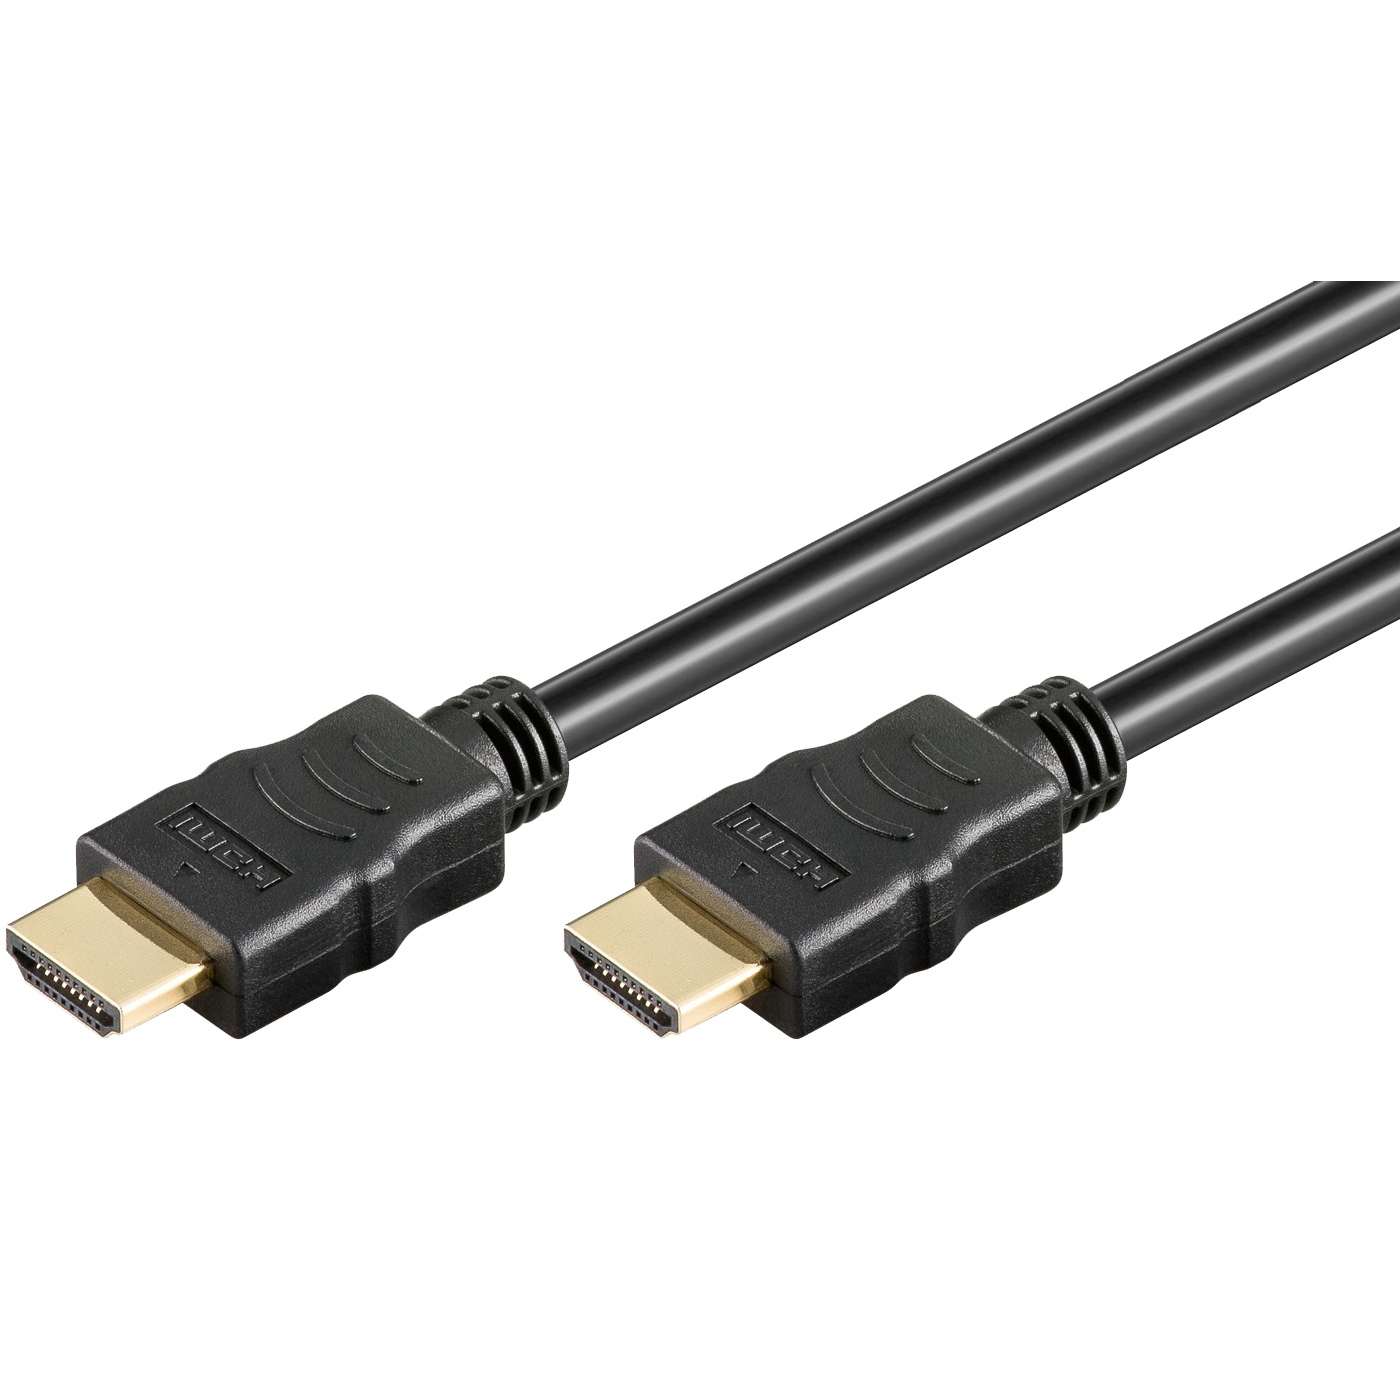 HDMI kabl, 1.0 met, ver. 2.0